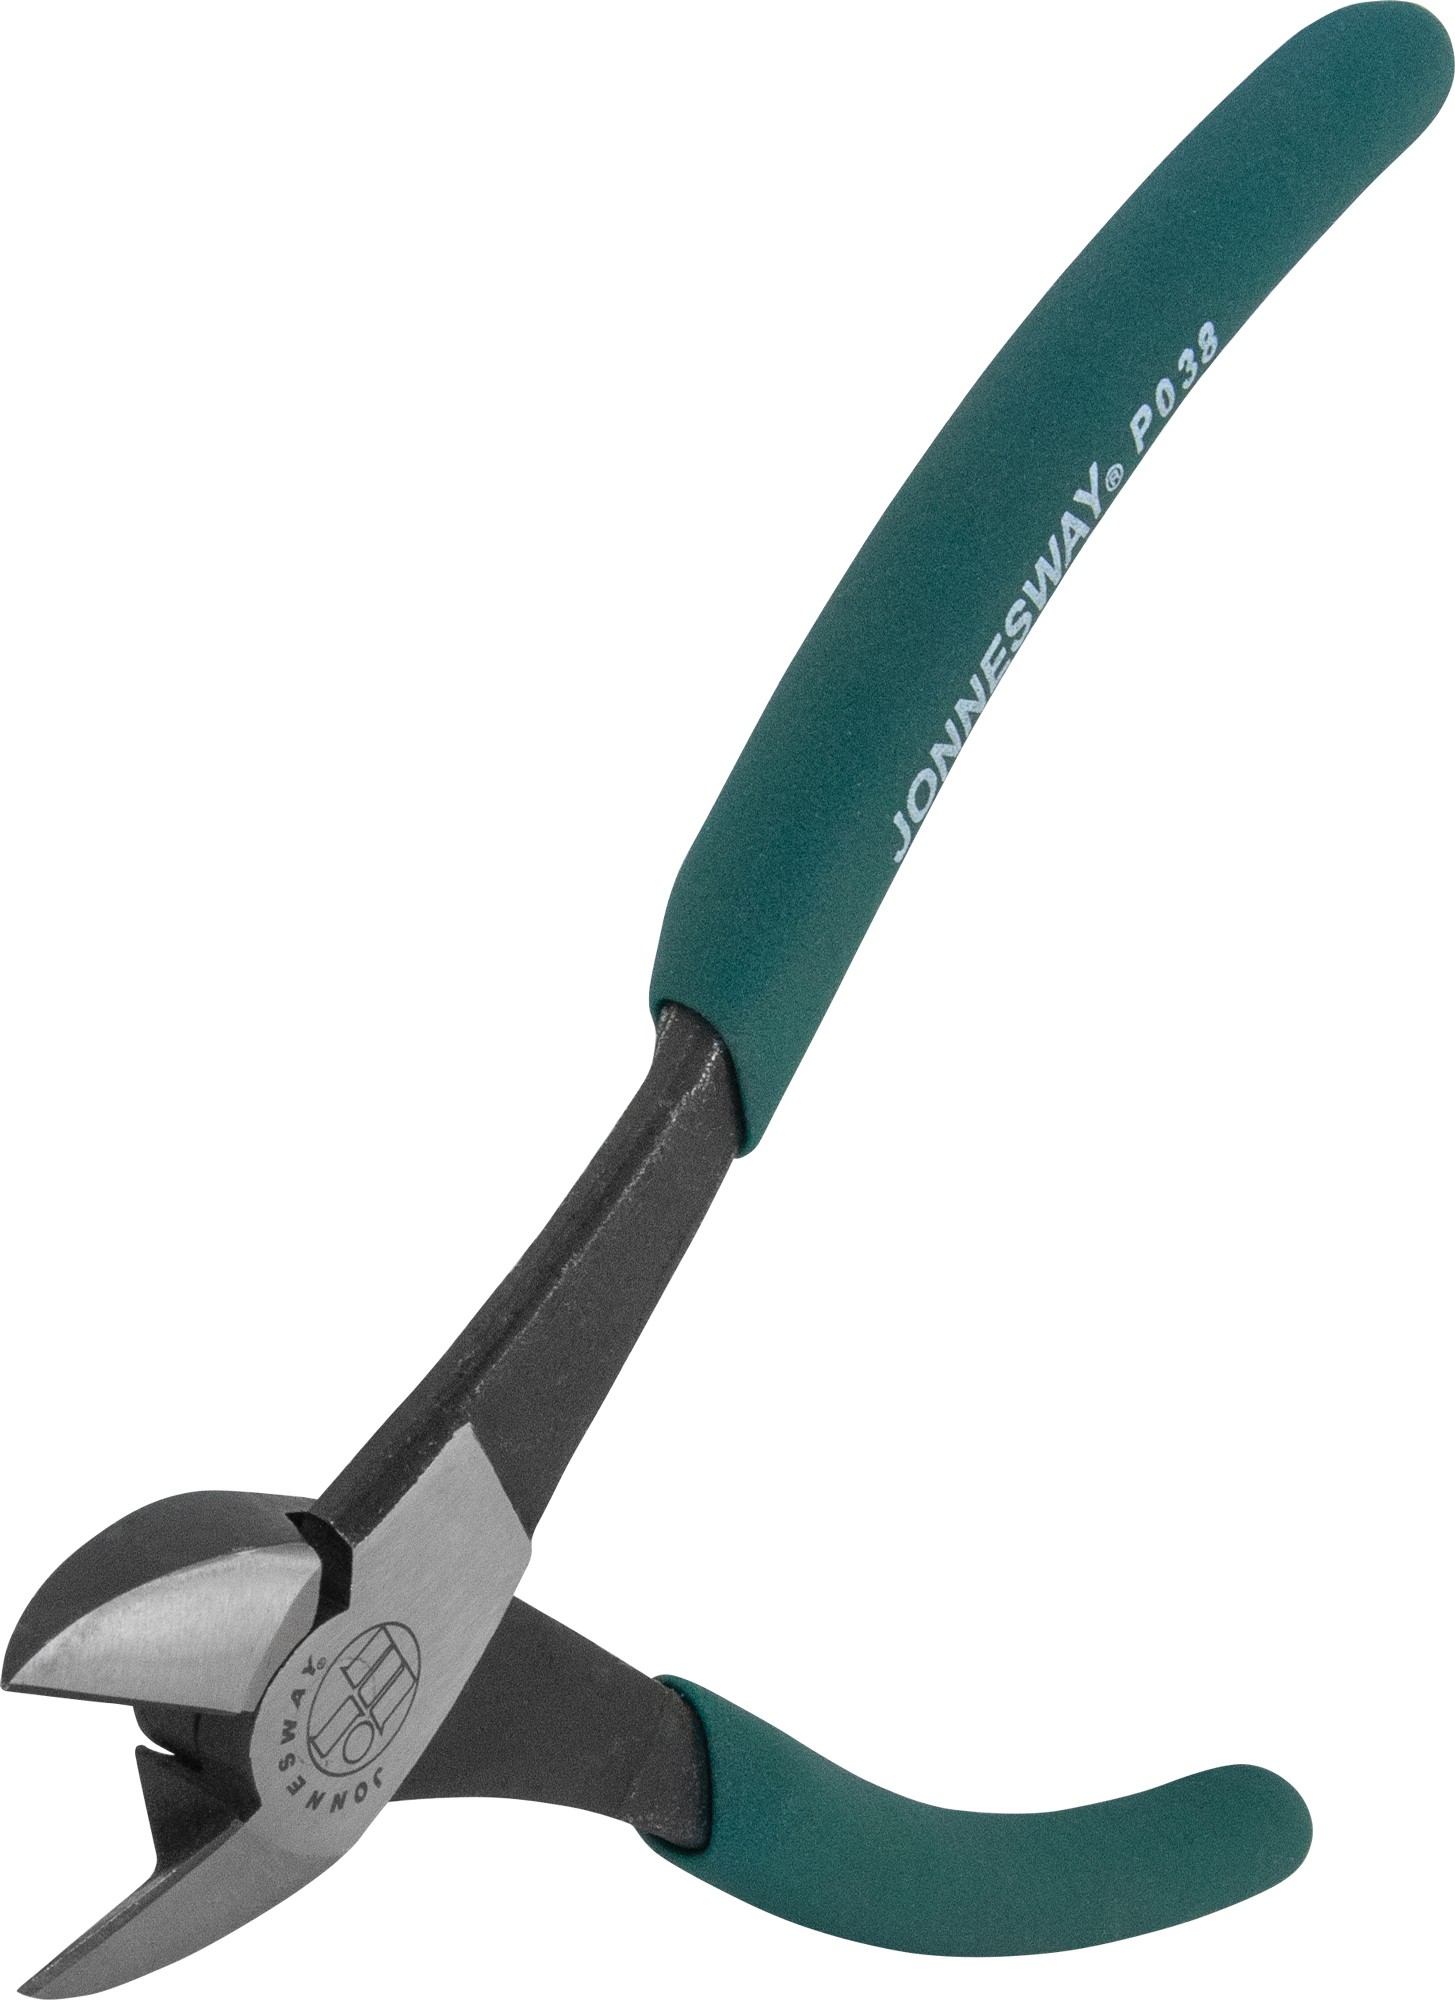 Комплект шарнирно-губцевого инструмента с набором торцевых ключей Н1,5-Н10 Jonnesway P018SP1 46623 - фото